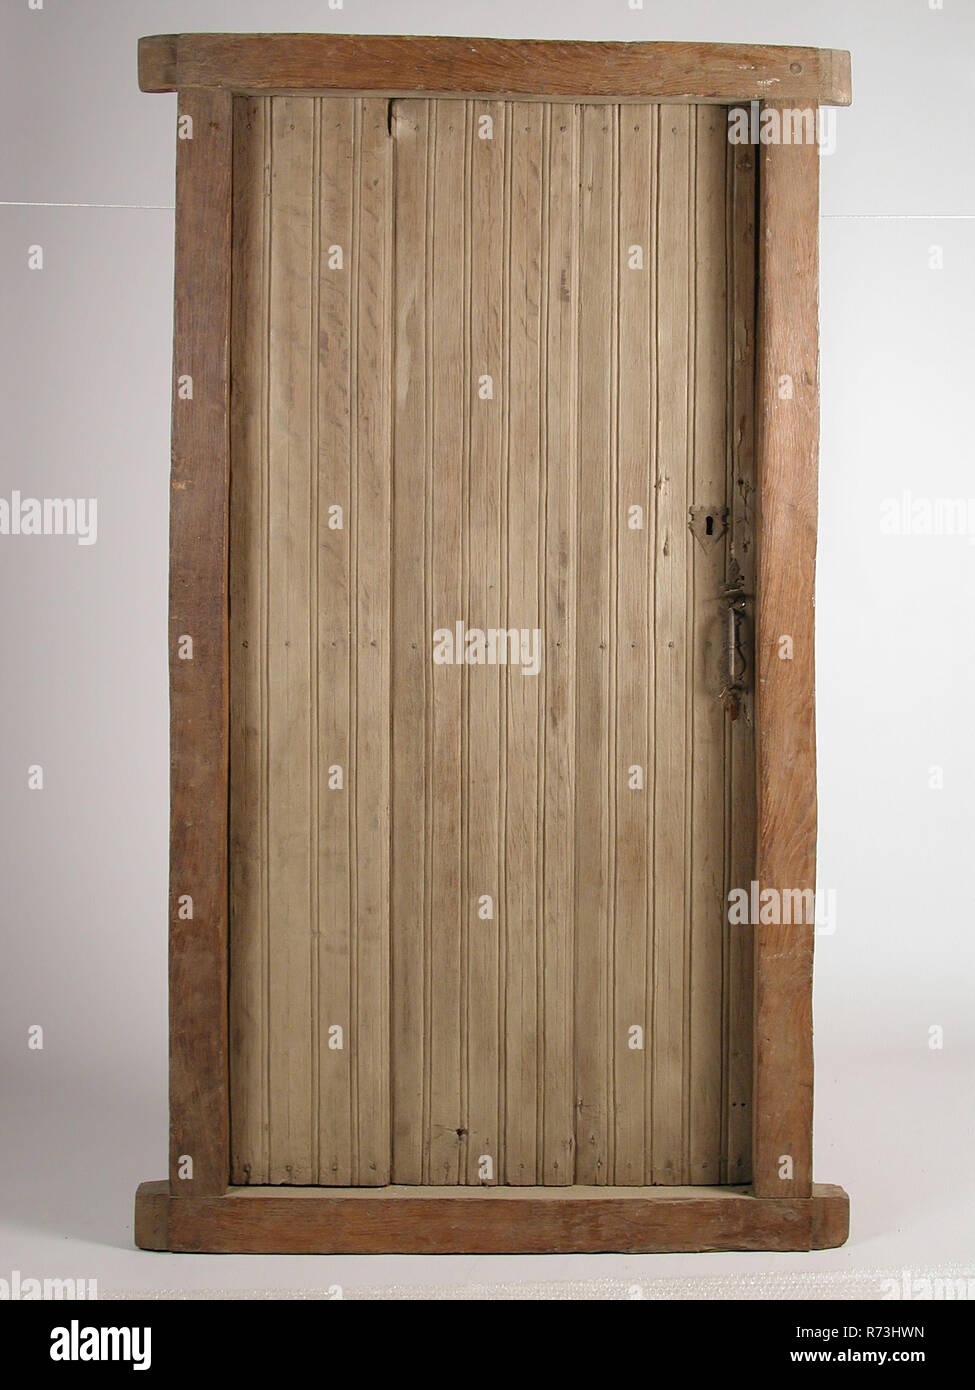 En el marco de la puerta, la construcción de parte del marco de la puerta  de roble de madera aserrada, cepillada clavado levantó puerta compuesta de  tres tablones verticales y tres tacos